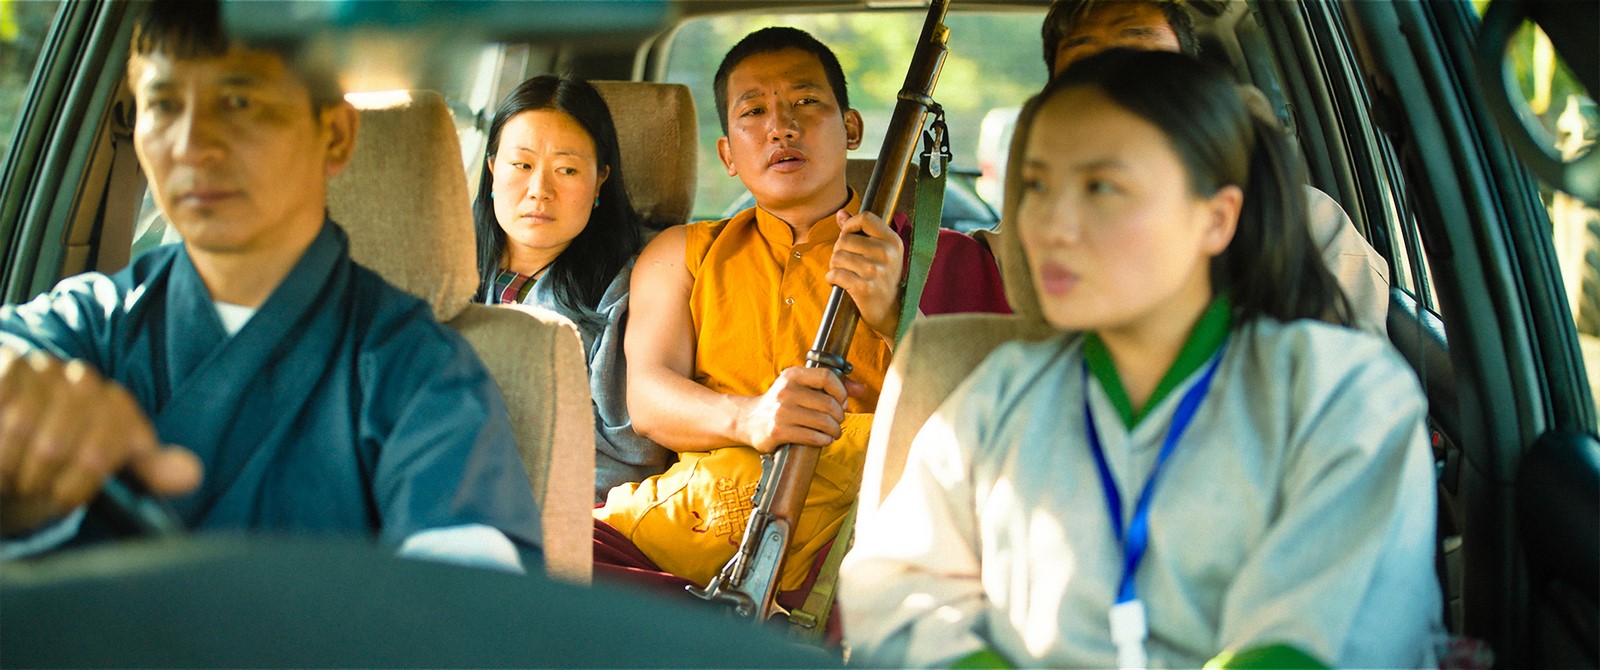 Nei cinema italiani con Officine UBU C'era una volta in Buthan (The monk and the Gun) , il nuovo film di Pawo Choyning Dorji, già regista del film candidato all'Oscar "Lunana".